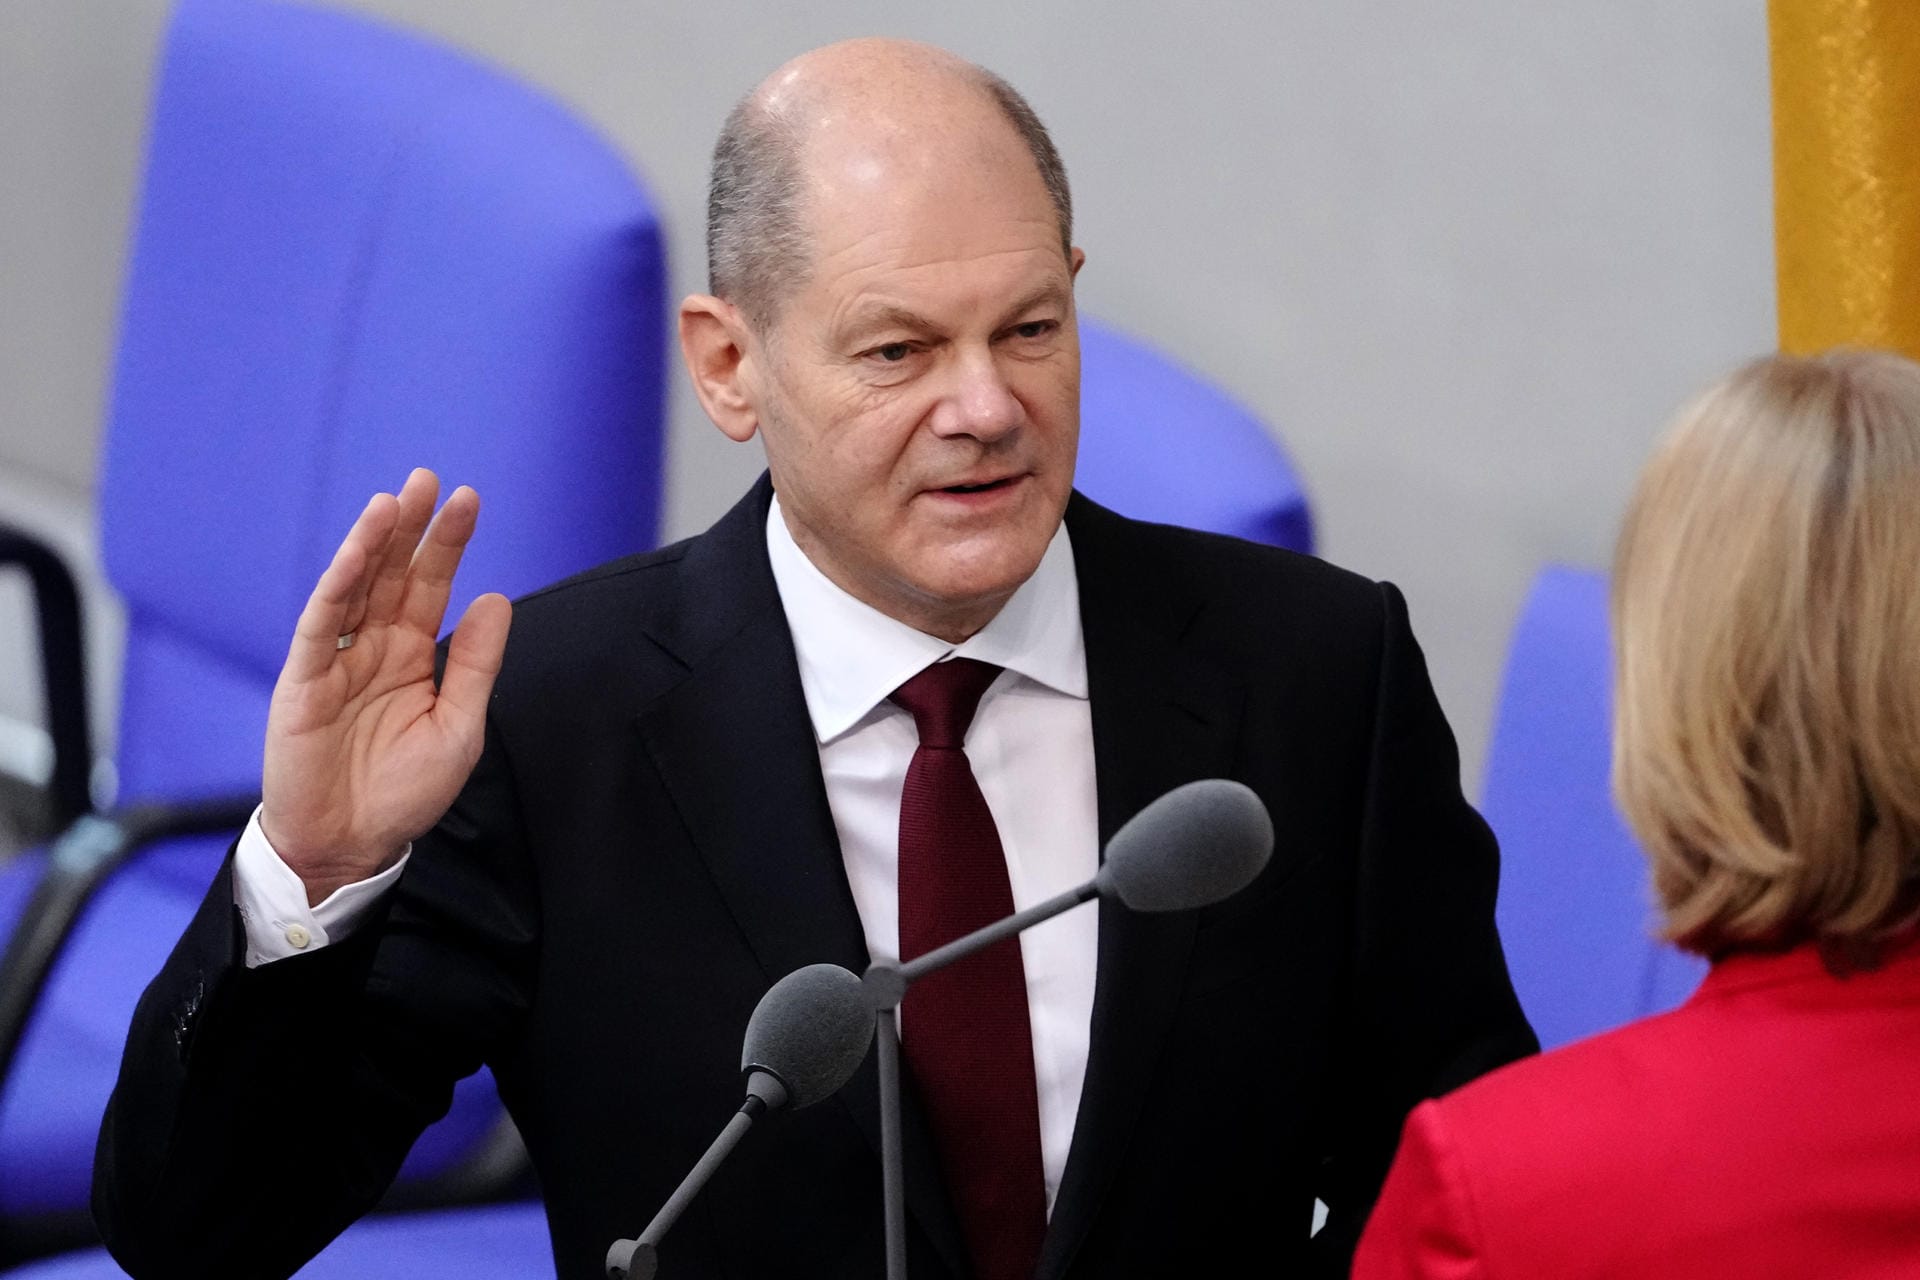 Olaf Scholz wurde zum Kanzler der Ampelregierung gewählt und führt das neue Bundeskabinett damit an. Vor Bärbel Bas (SPD), Bundestagspräsidentin, legte der 63-Jährige den Amtseid für seine erste Amtszeit ab.